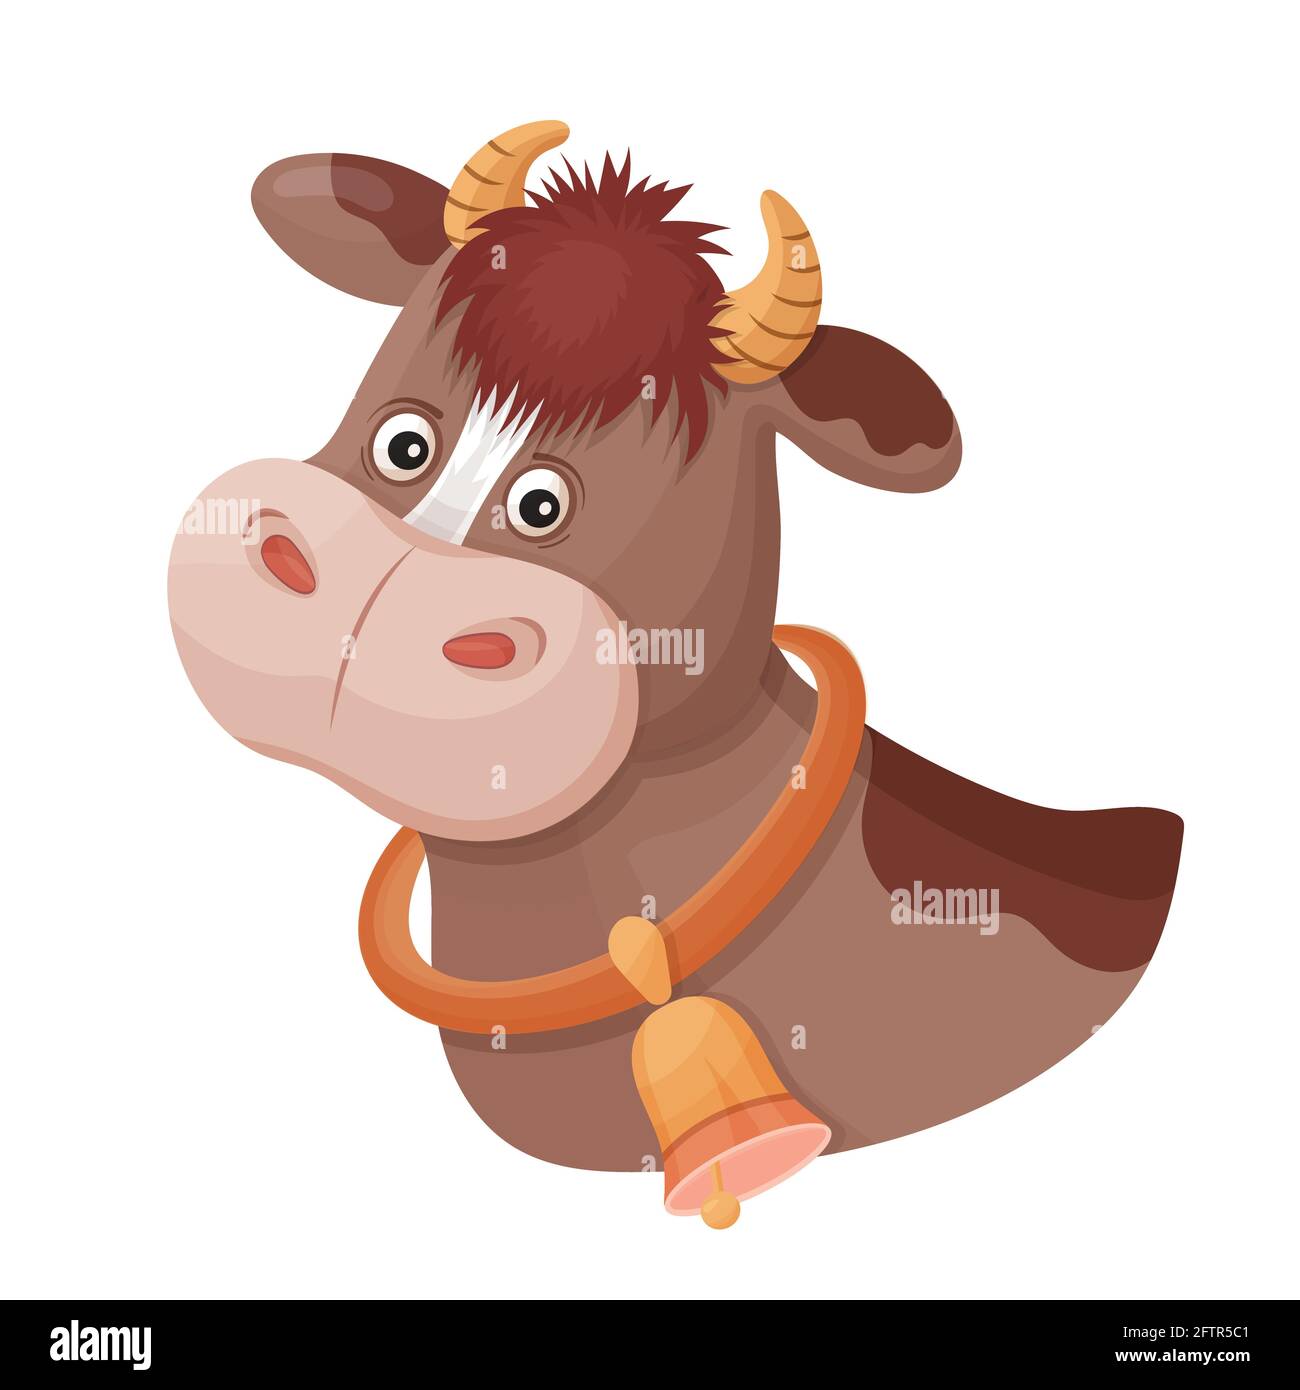 Lustige gefleckte Kuh mit Glocke am Hals. Tierkopf. Wadenbulle Gesicht Porträt mit Horn. Bauernmilch. Zeichentrickfigur für die Verpackung von Milchprodukten. Vektor Stock Vektor